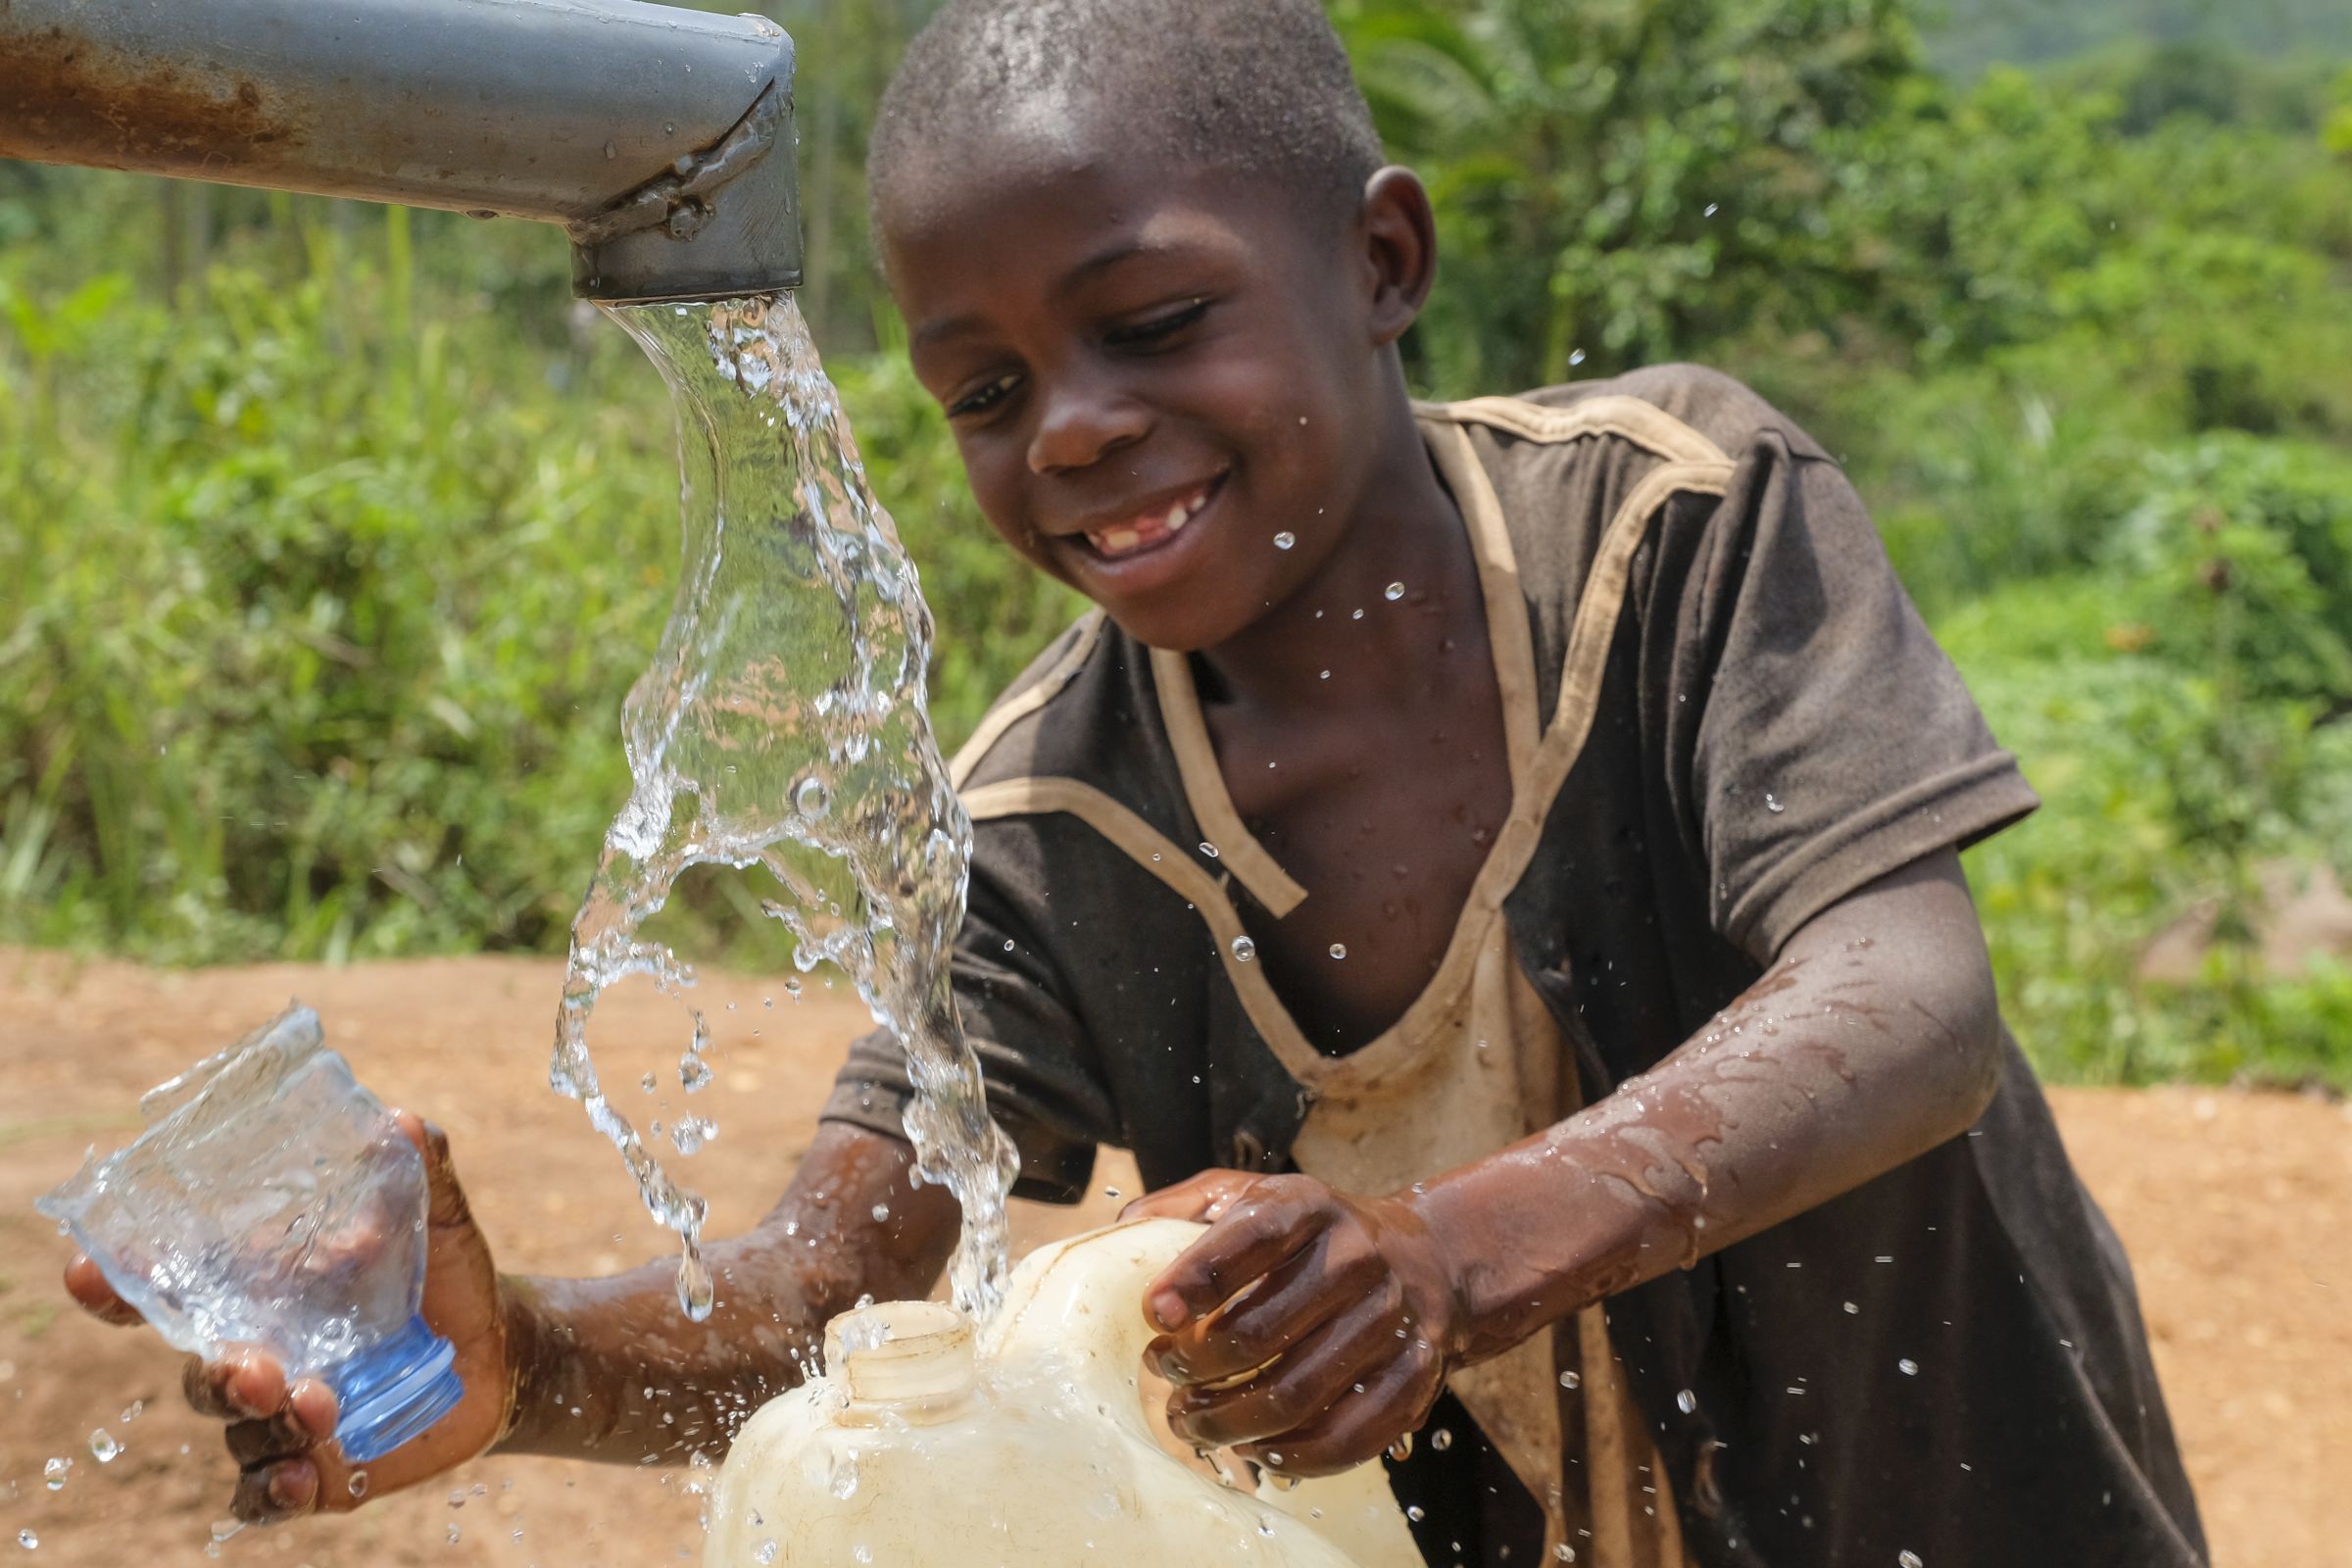 Junge an Wasserhahn einer Pumpe füllt Kanister, Wasserstrahl im Vordergrund